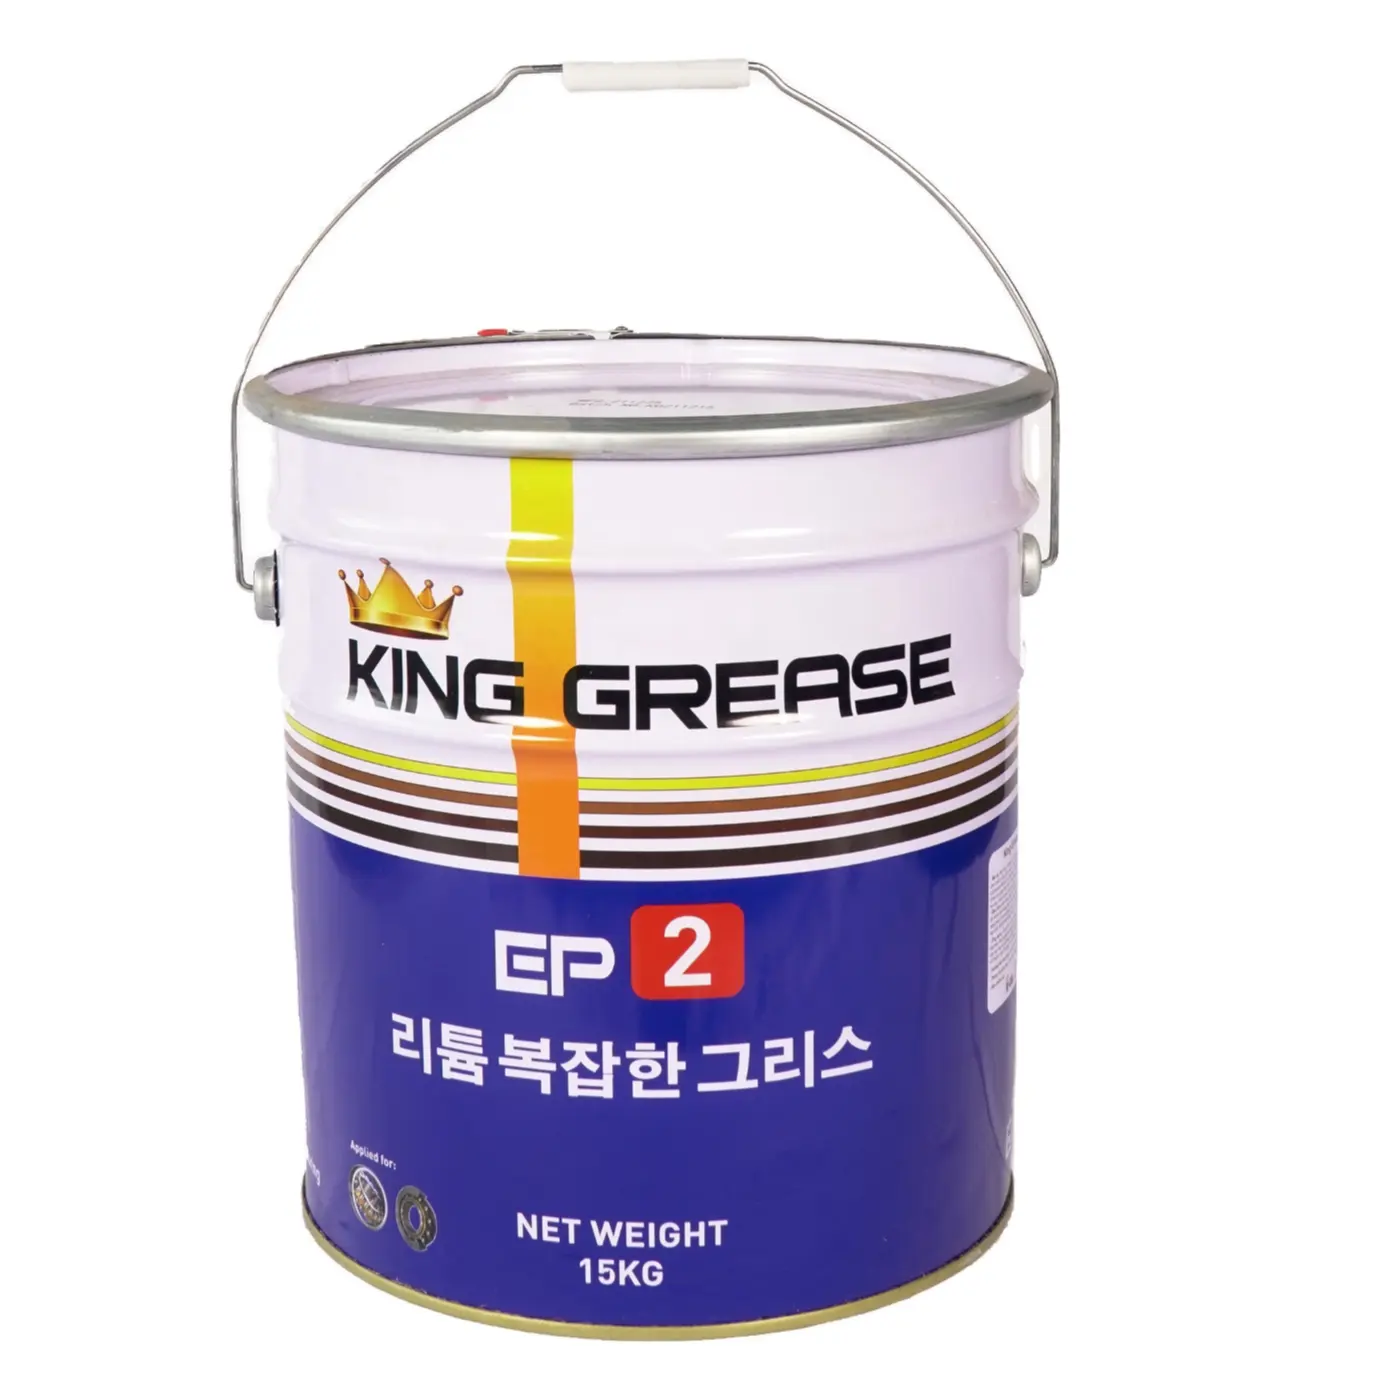 Usine KING GREASE LITHIUM EP2 au Vietnam, lubrifiant haute température et bas prix pour roulements lourds. Graisse